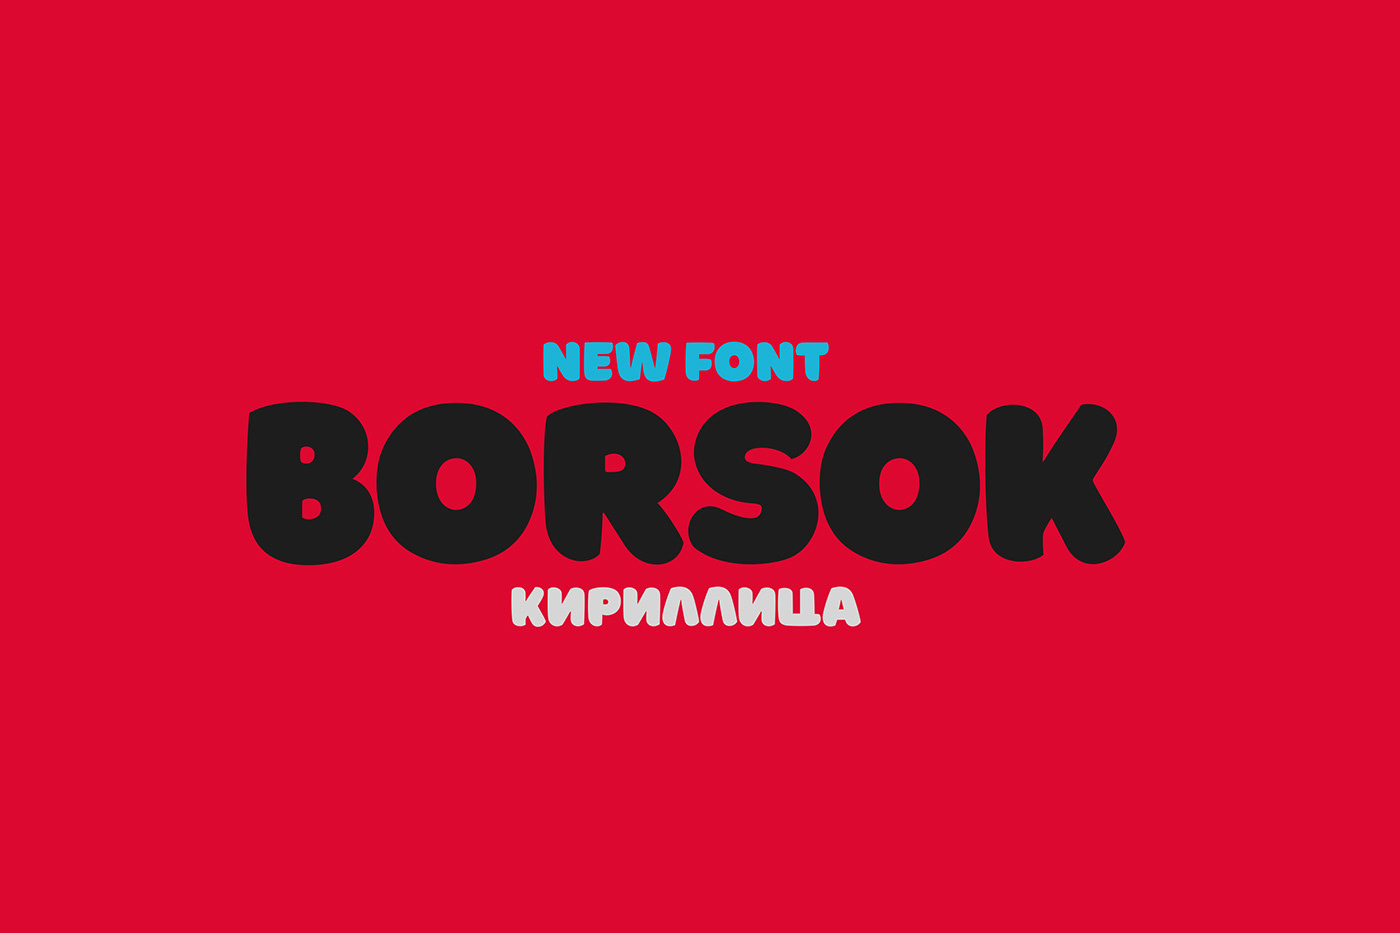 Borsok